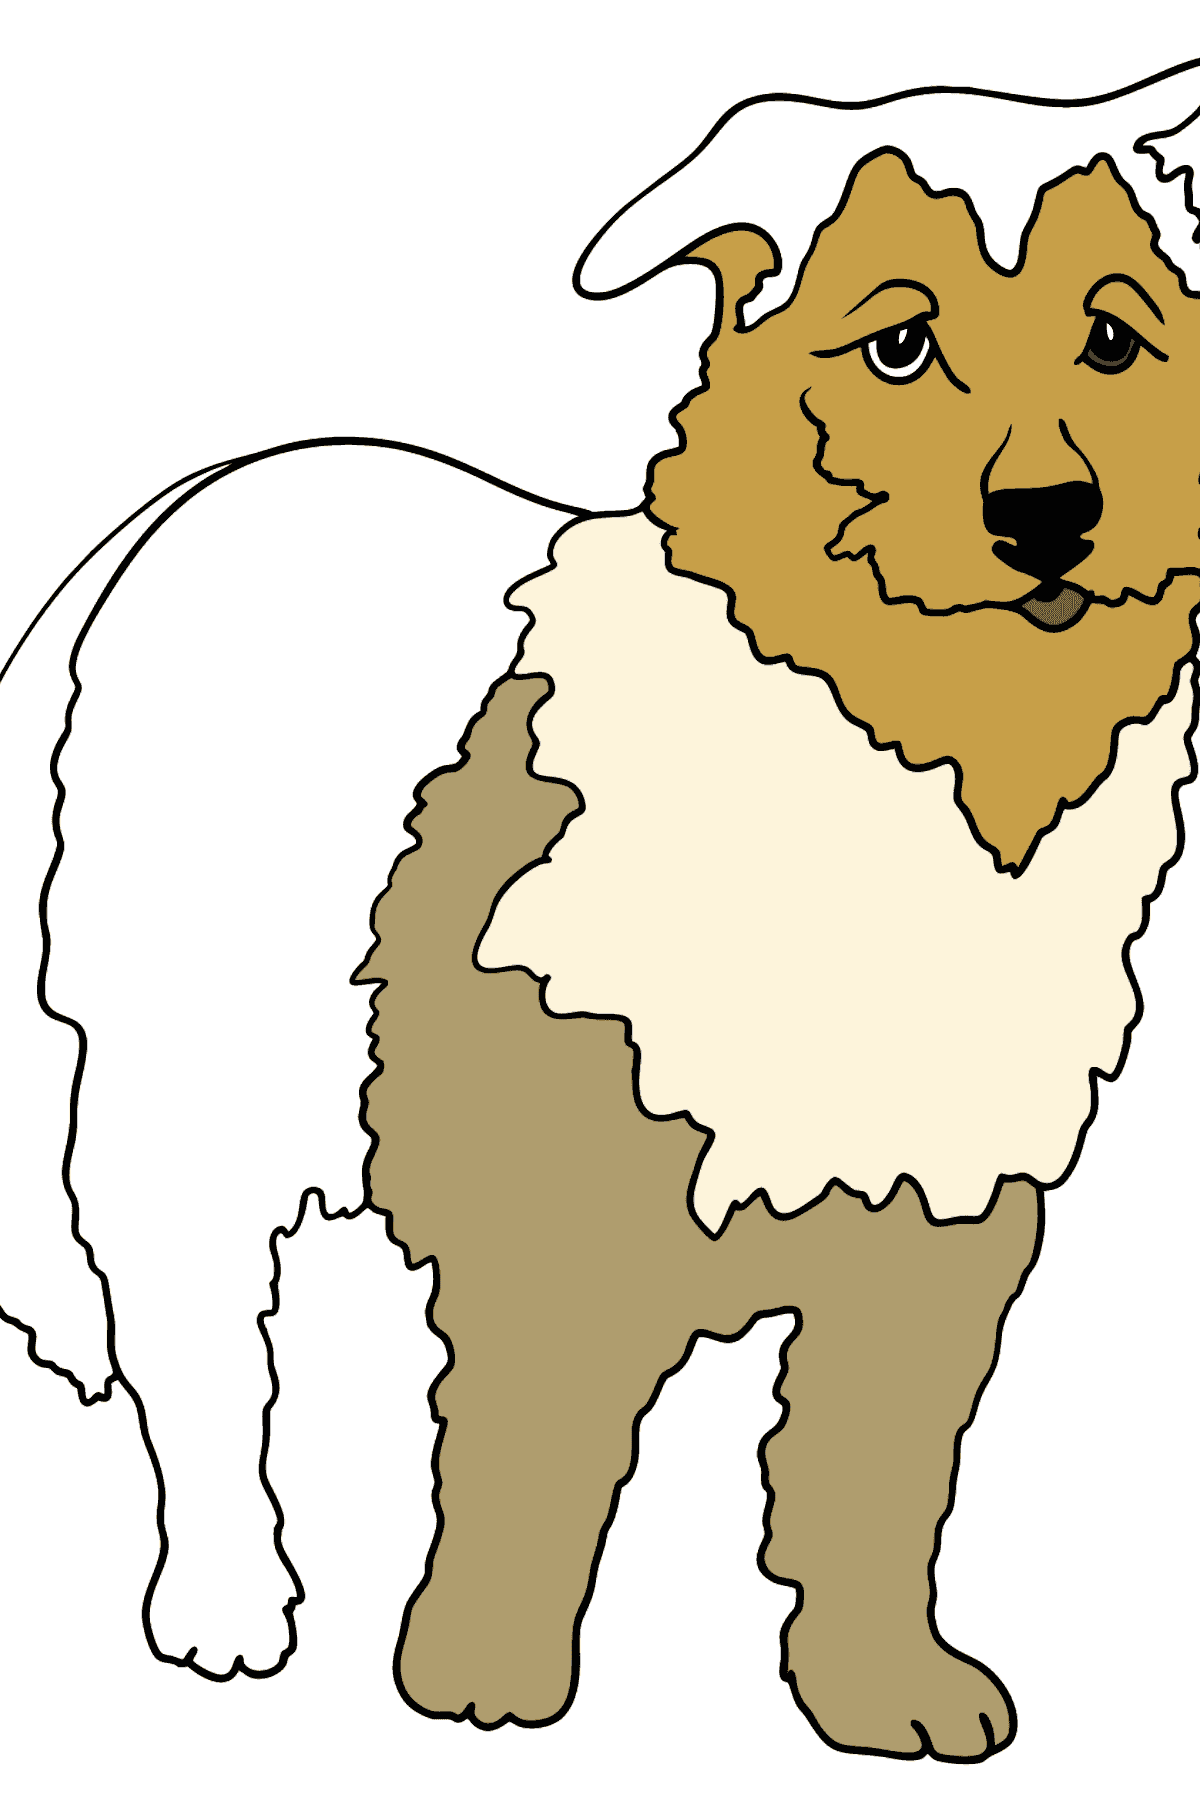 Boyama sayfası altın çoban (kolay) - Boyamalar çocuklar için